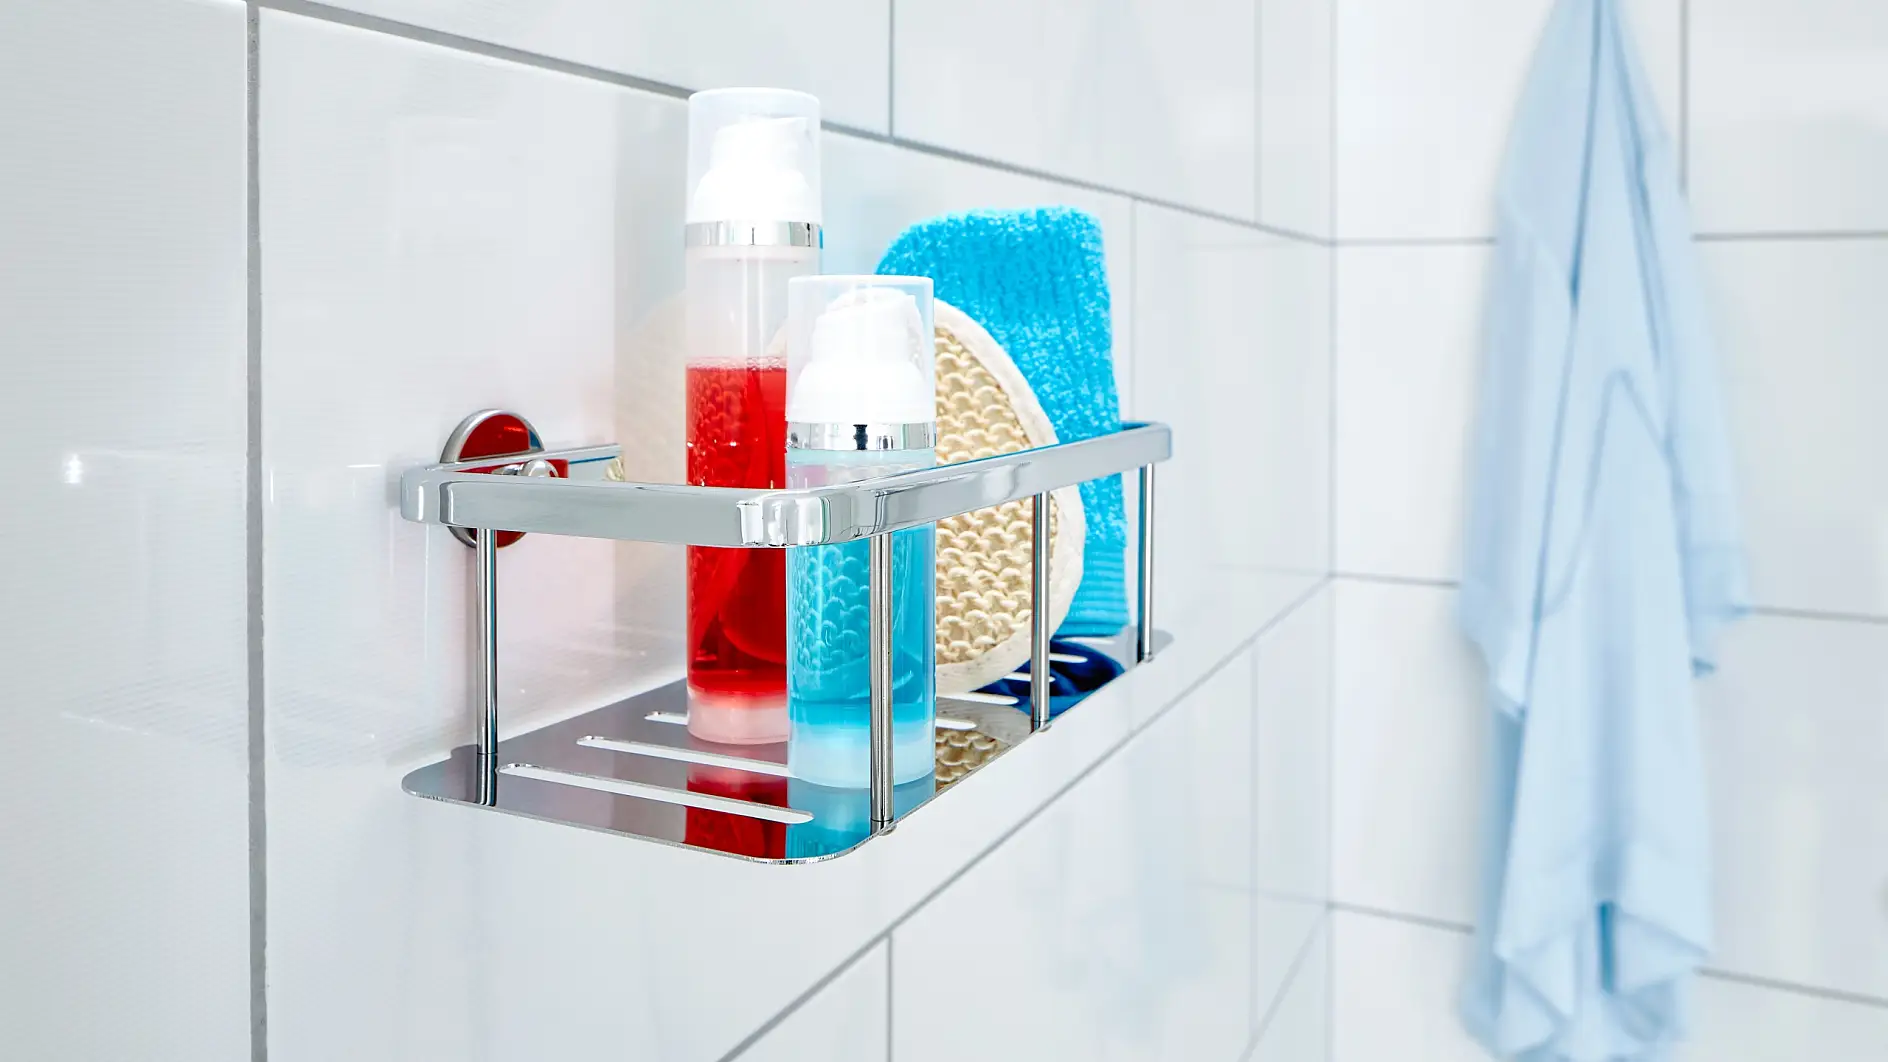 Ukládejte si své potřeby do sprchy připravené na dosah ruky, ale chráněné před kapkami vody.